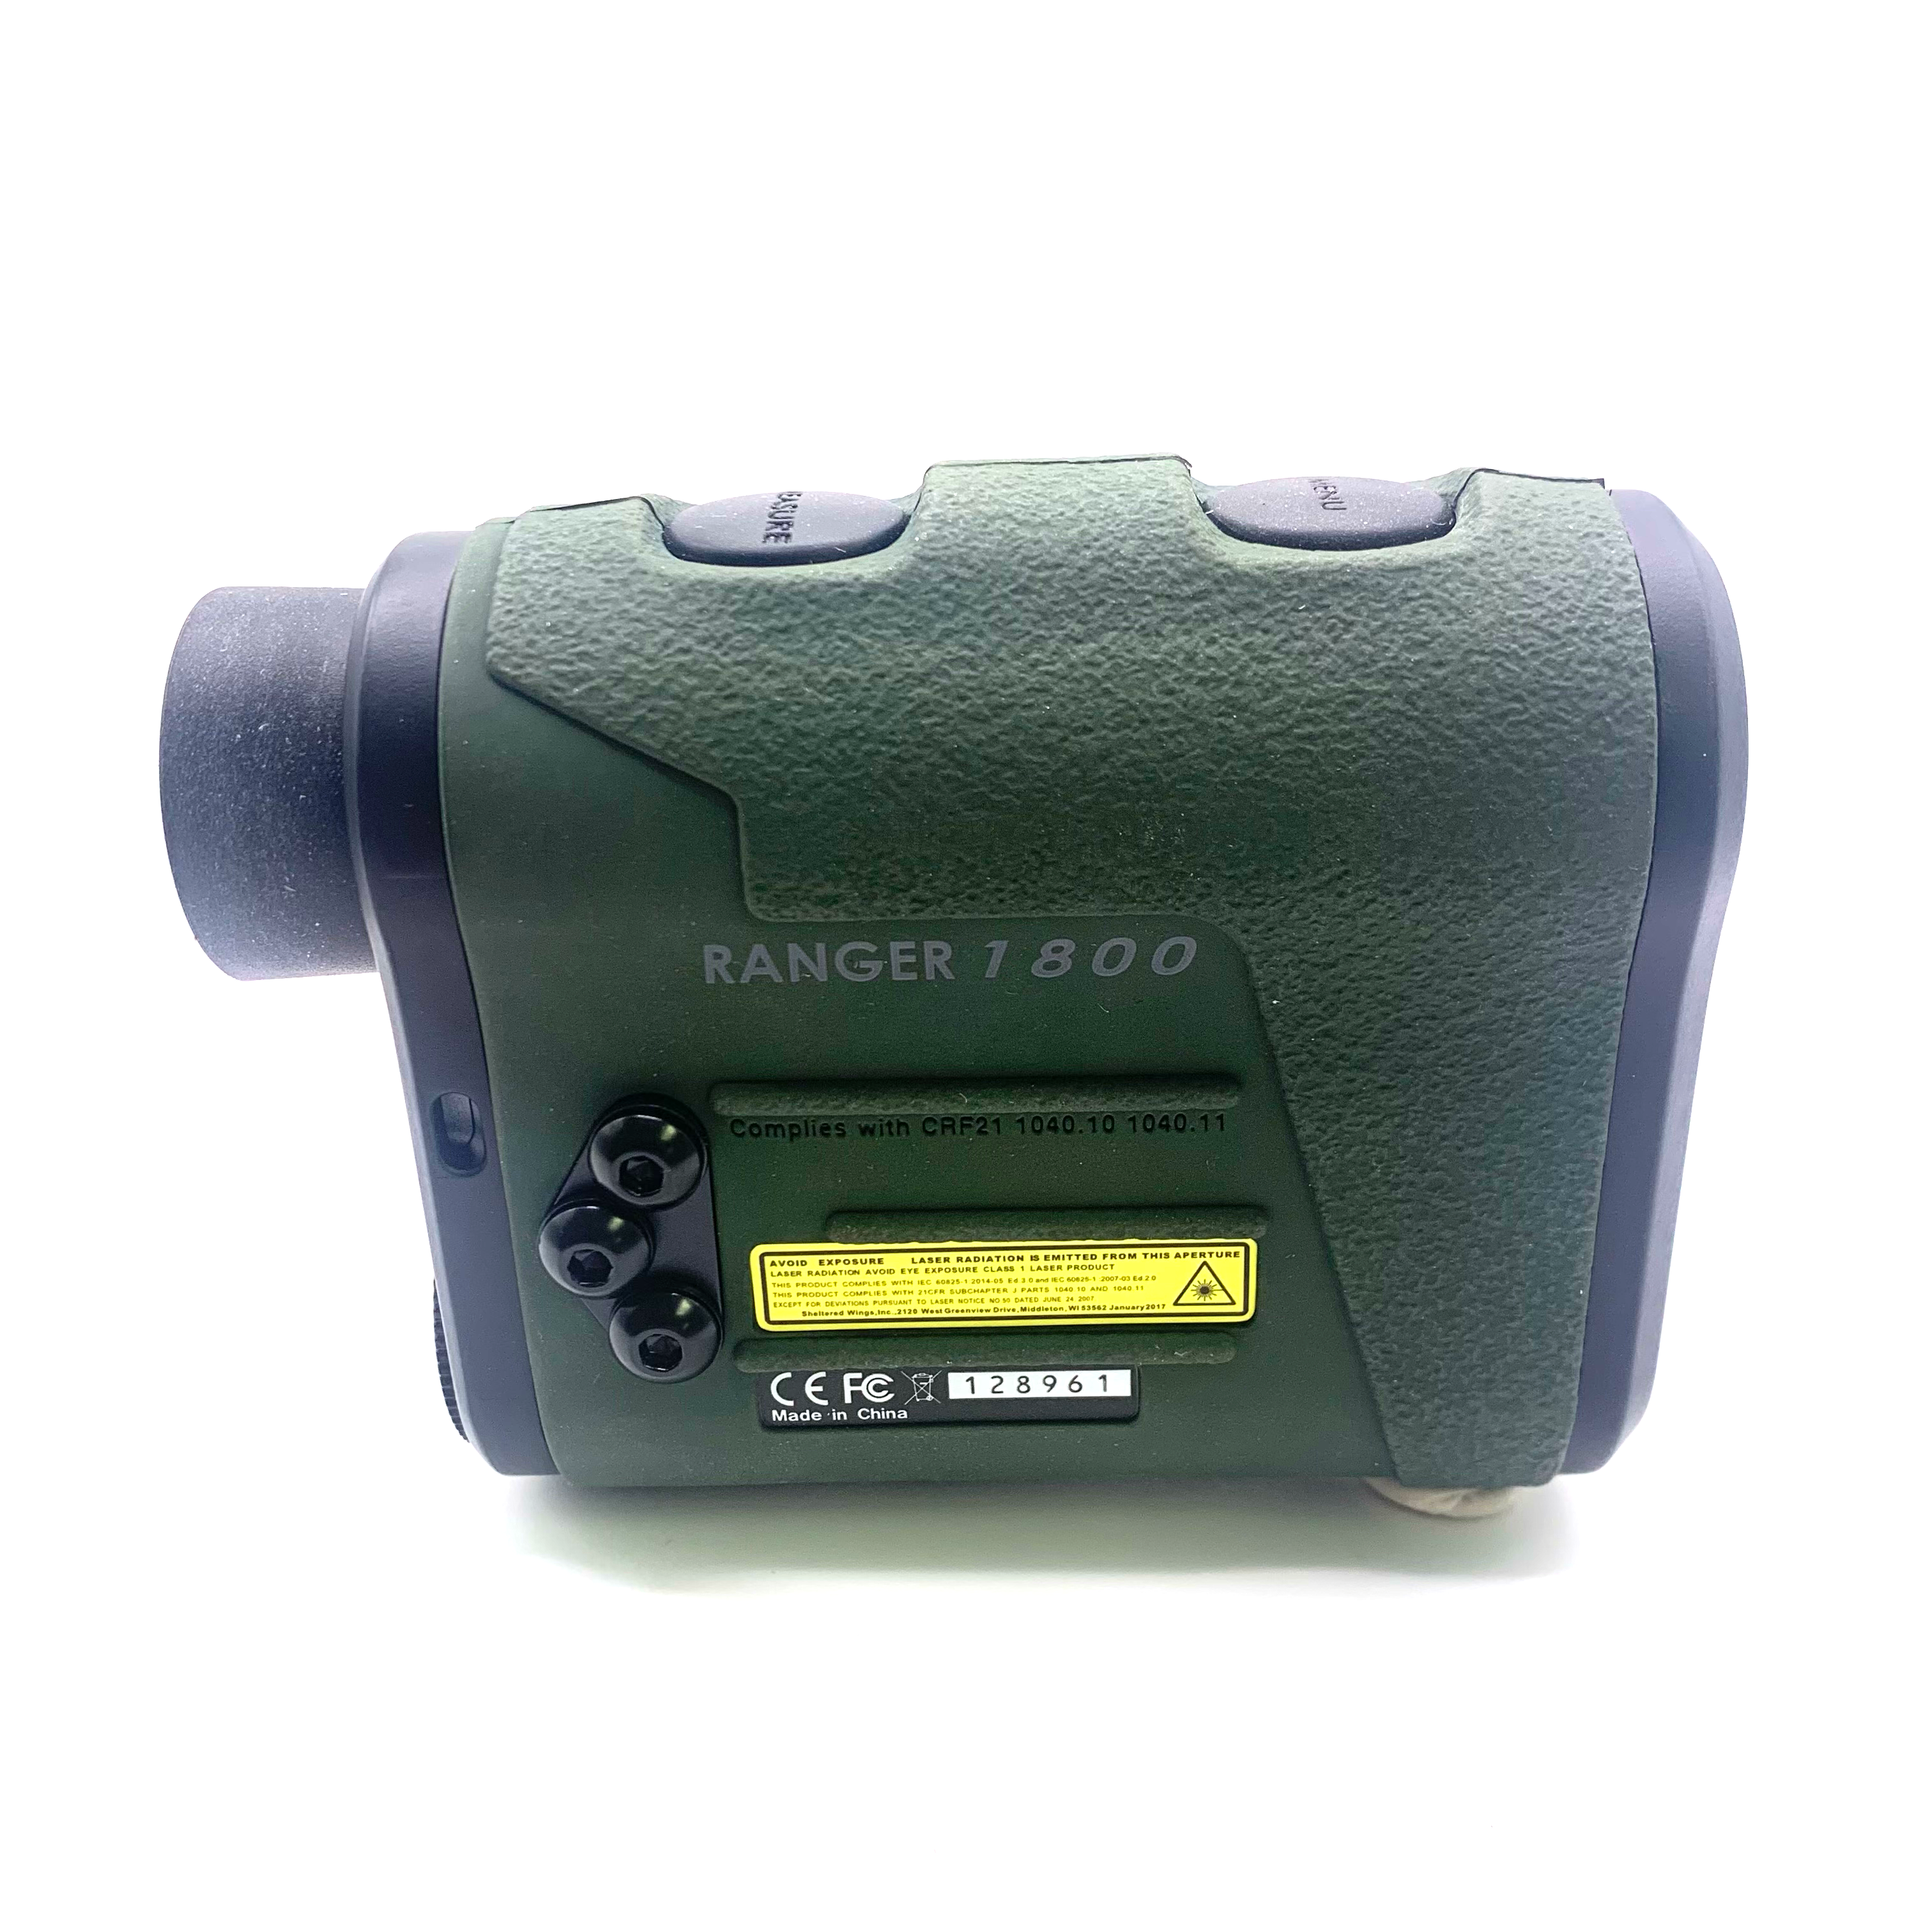 Vortex Impact 1800 Range Finder -  Brand New in Box - RPI Supplies